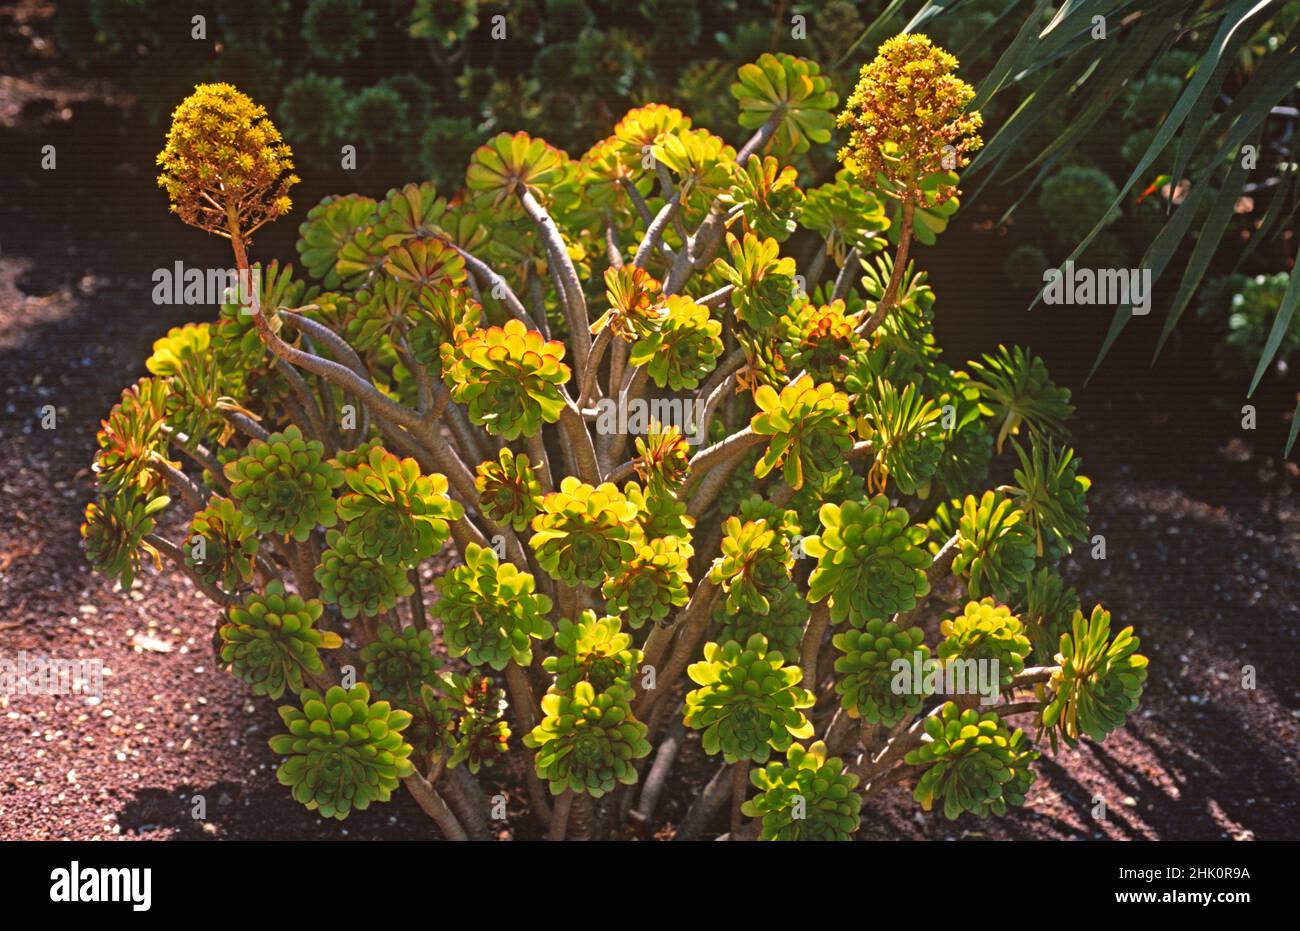 Bejeque arboreo (Aeonium arboreum) Is a succulent shrub endemic to Canary Islands except Lanzarote and Fuerteventura. Stock Photo